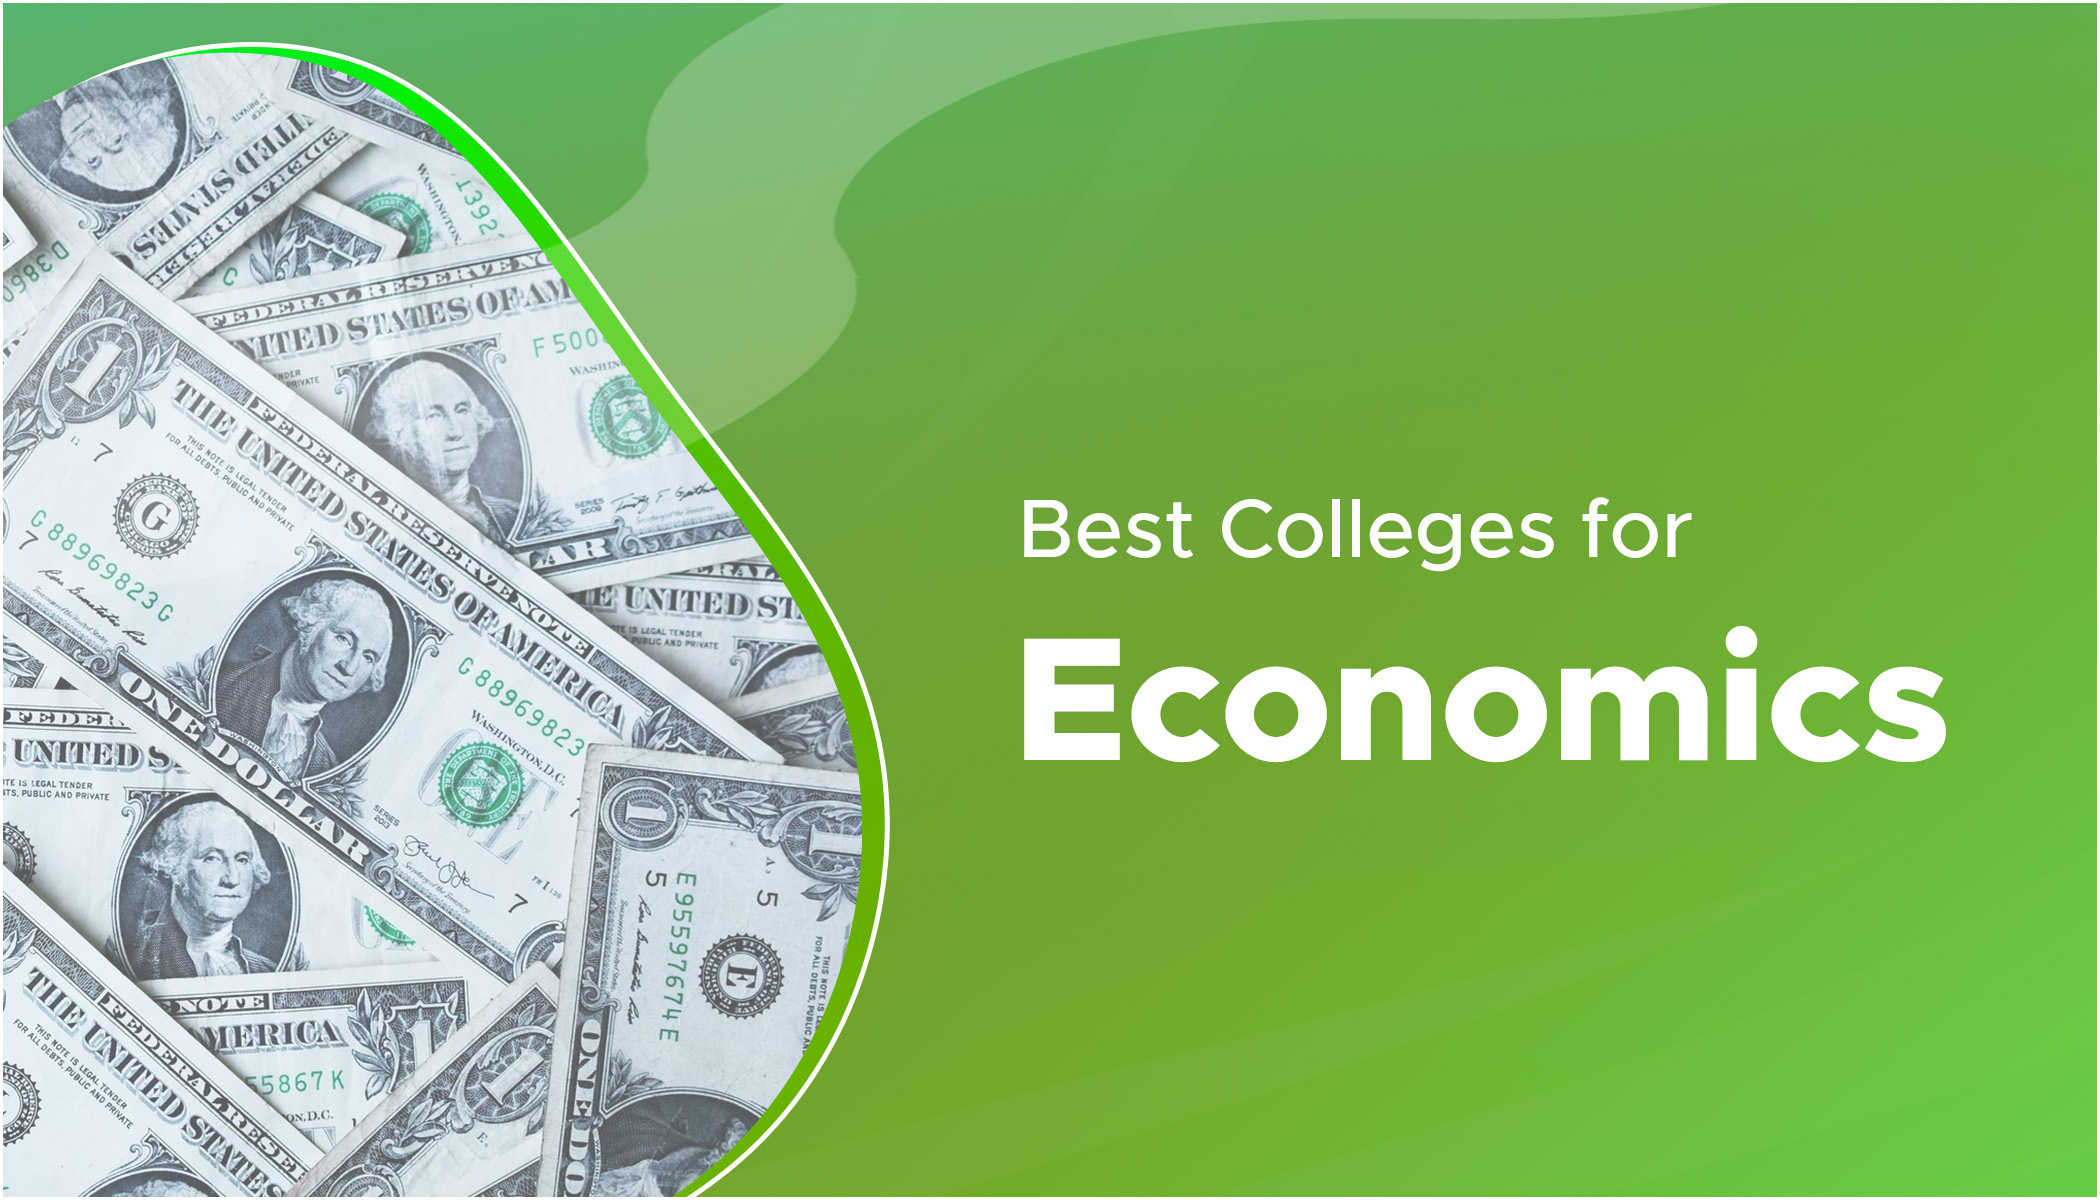 phd economics best universities